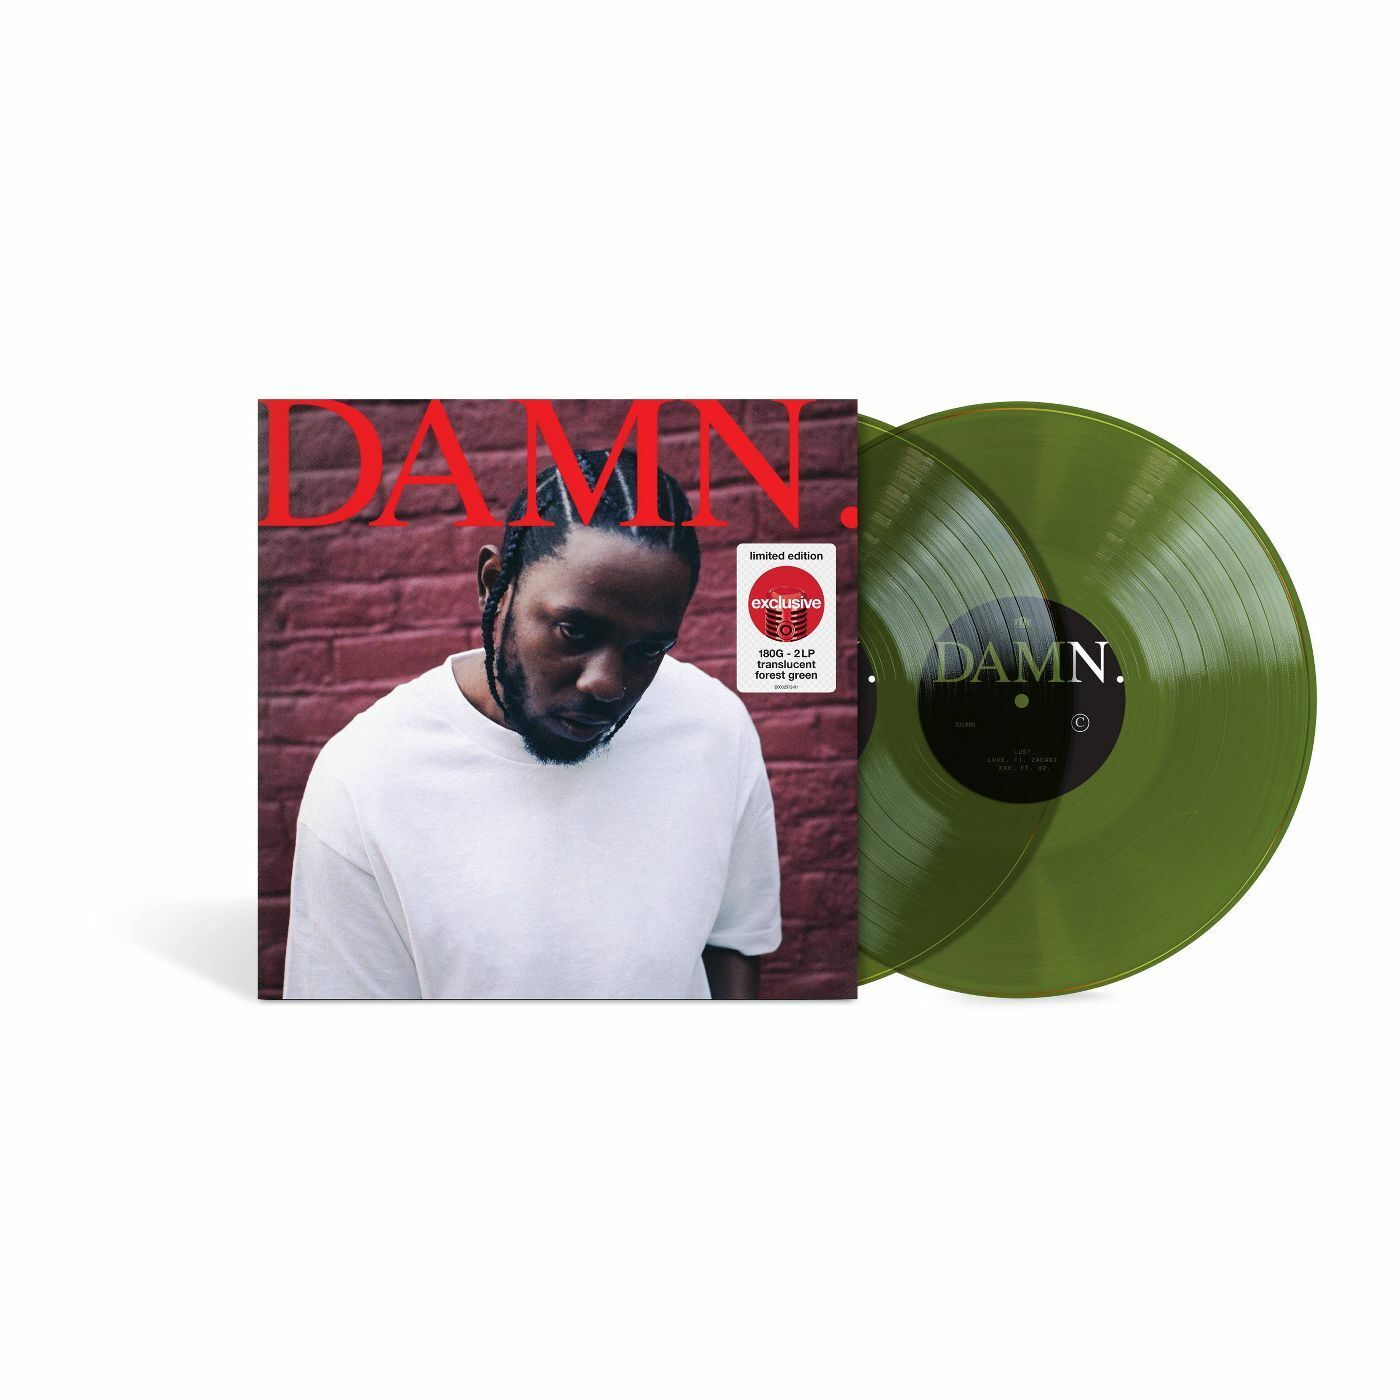 Kendrick Lamar ‎– Damn. LIMITED color vinyl - SEALED | eBay